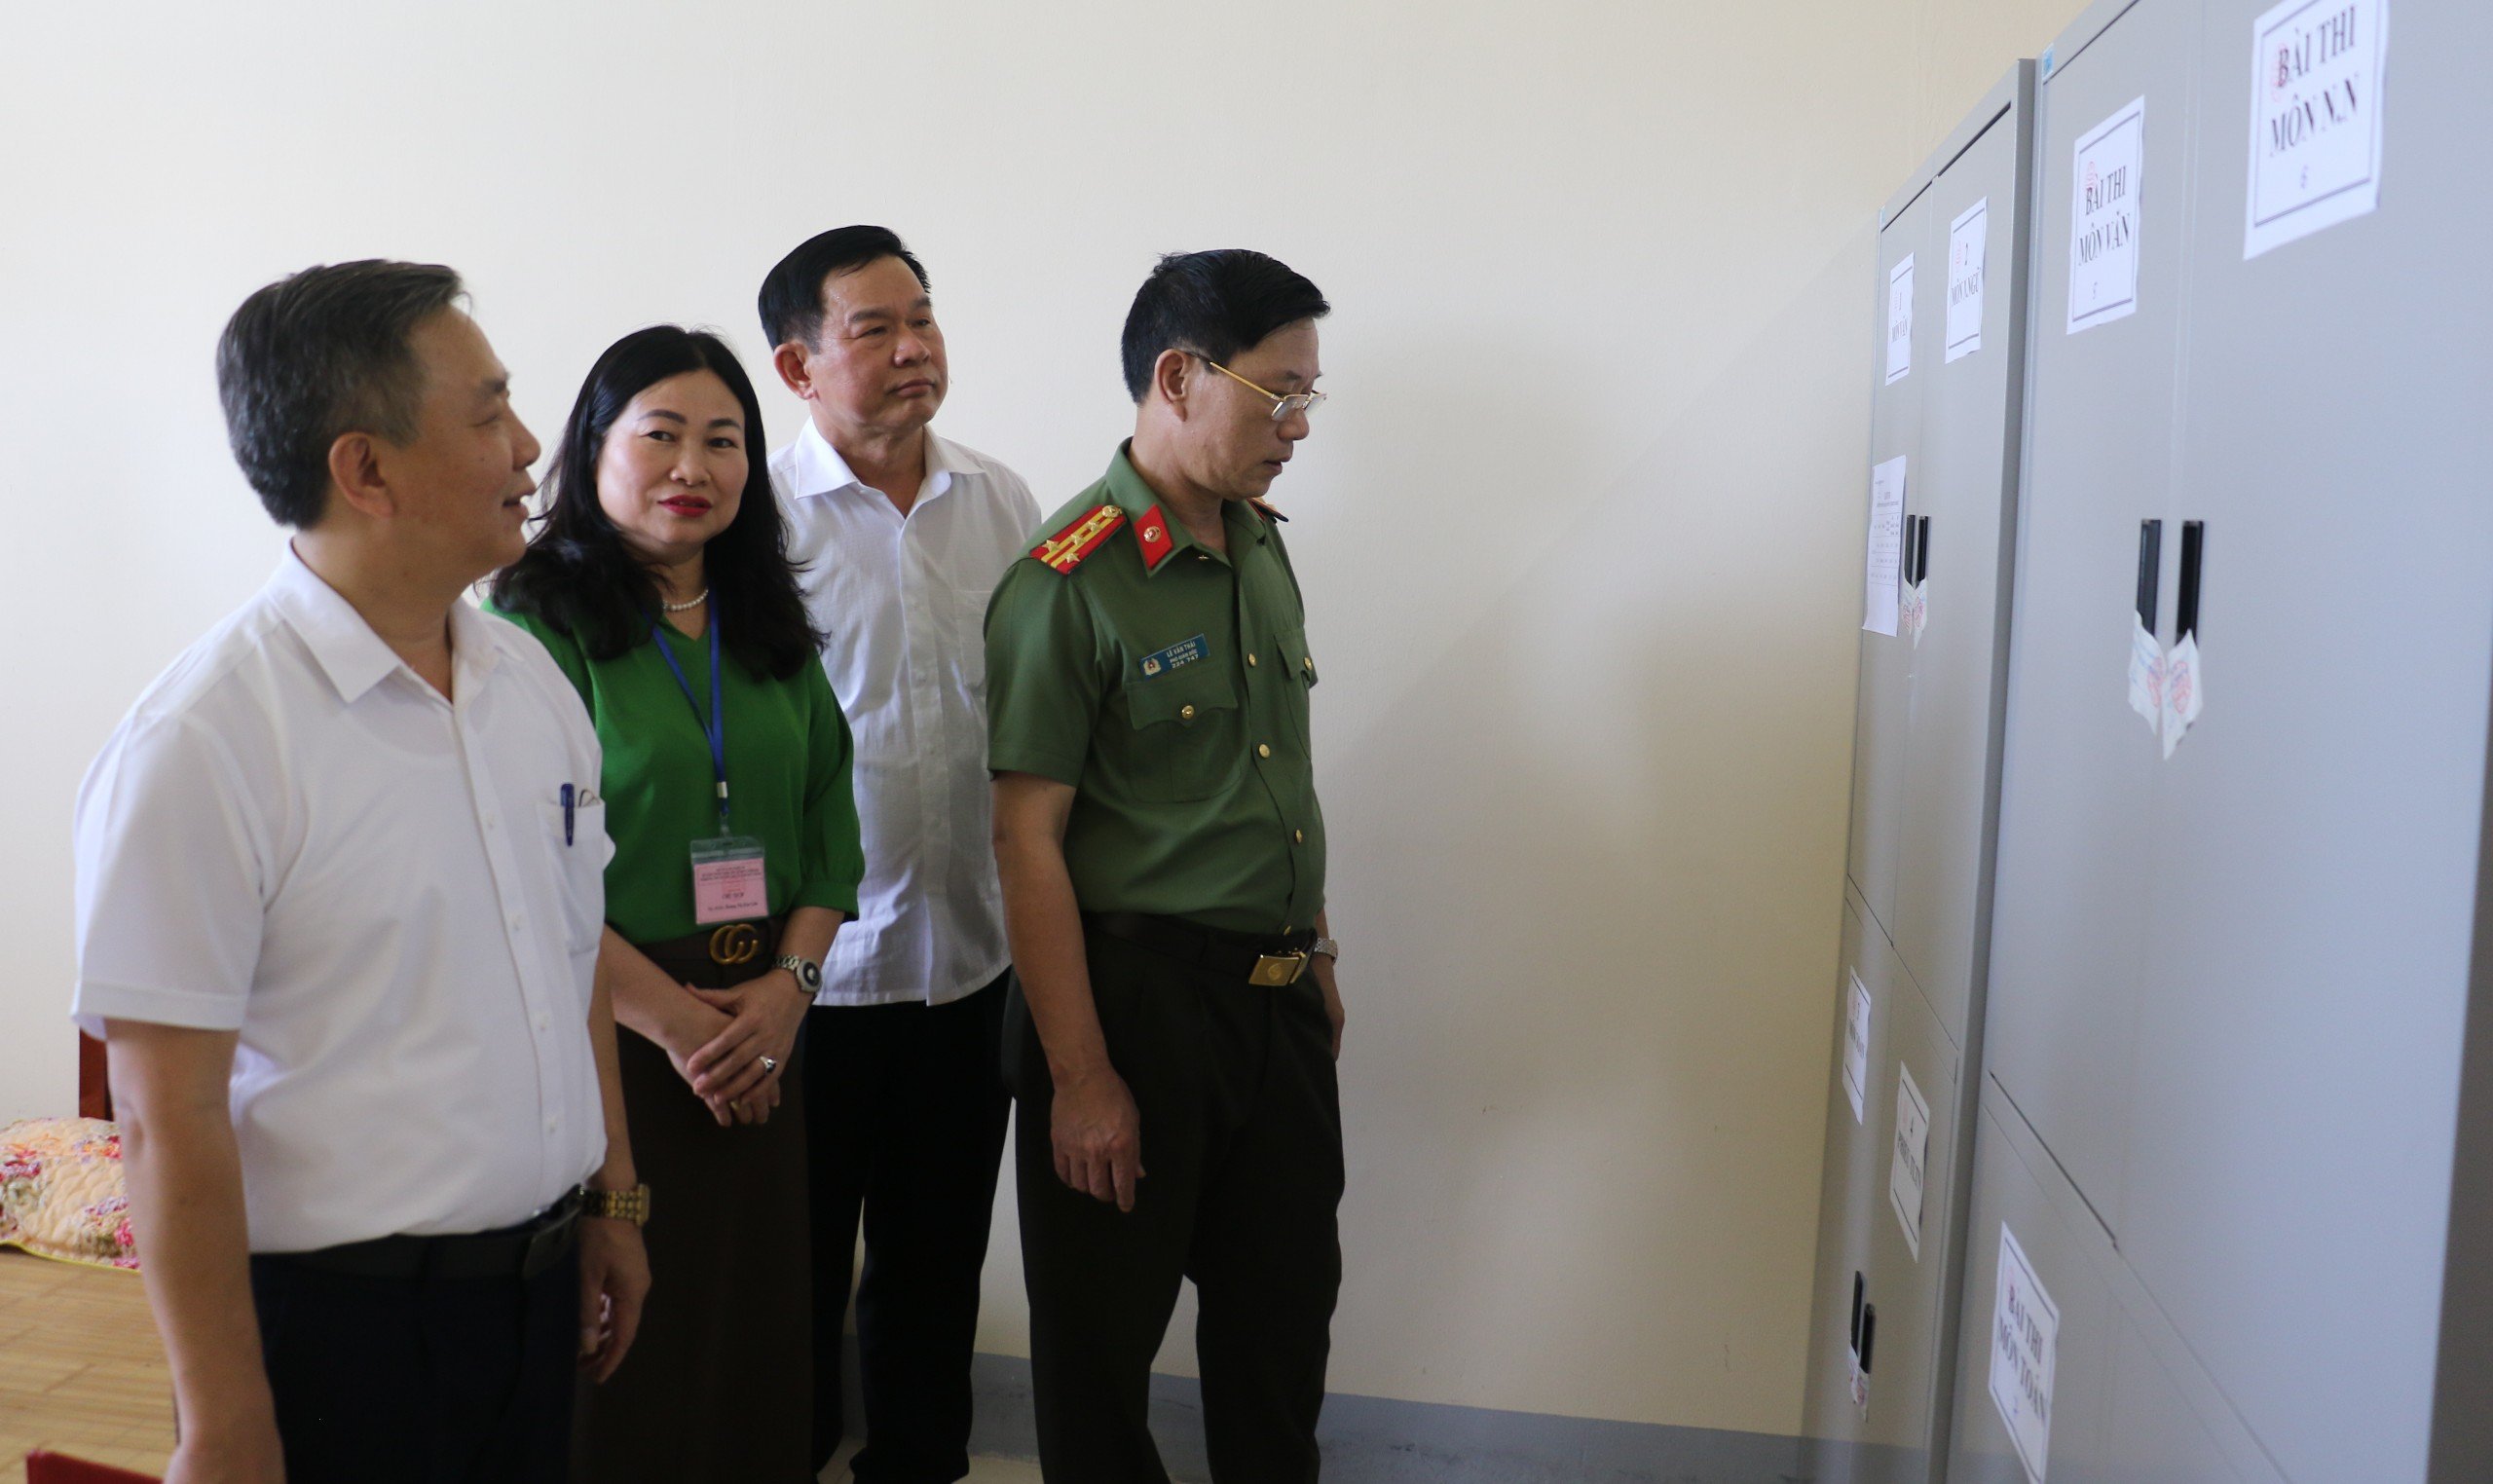 Đồng chí Đại tá Lê Văn Thái kiểm tra phòng bảo quản đề thi, bài thi tại Hội đồng  thi Trường THPT Nguyễn Duy Trinh